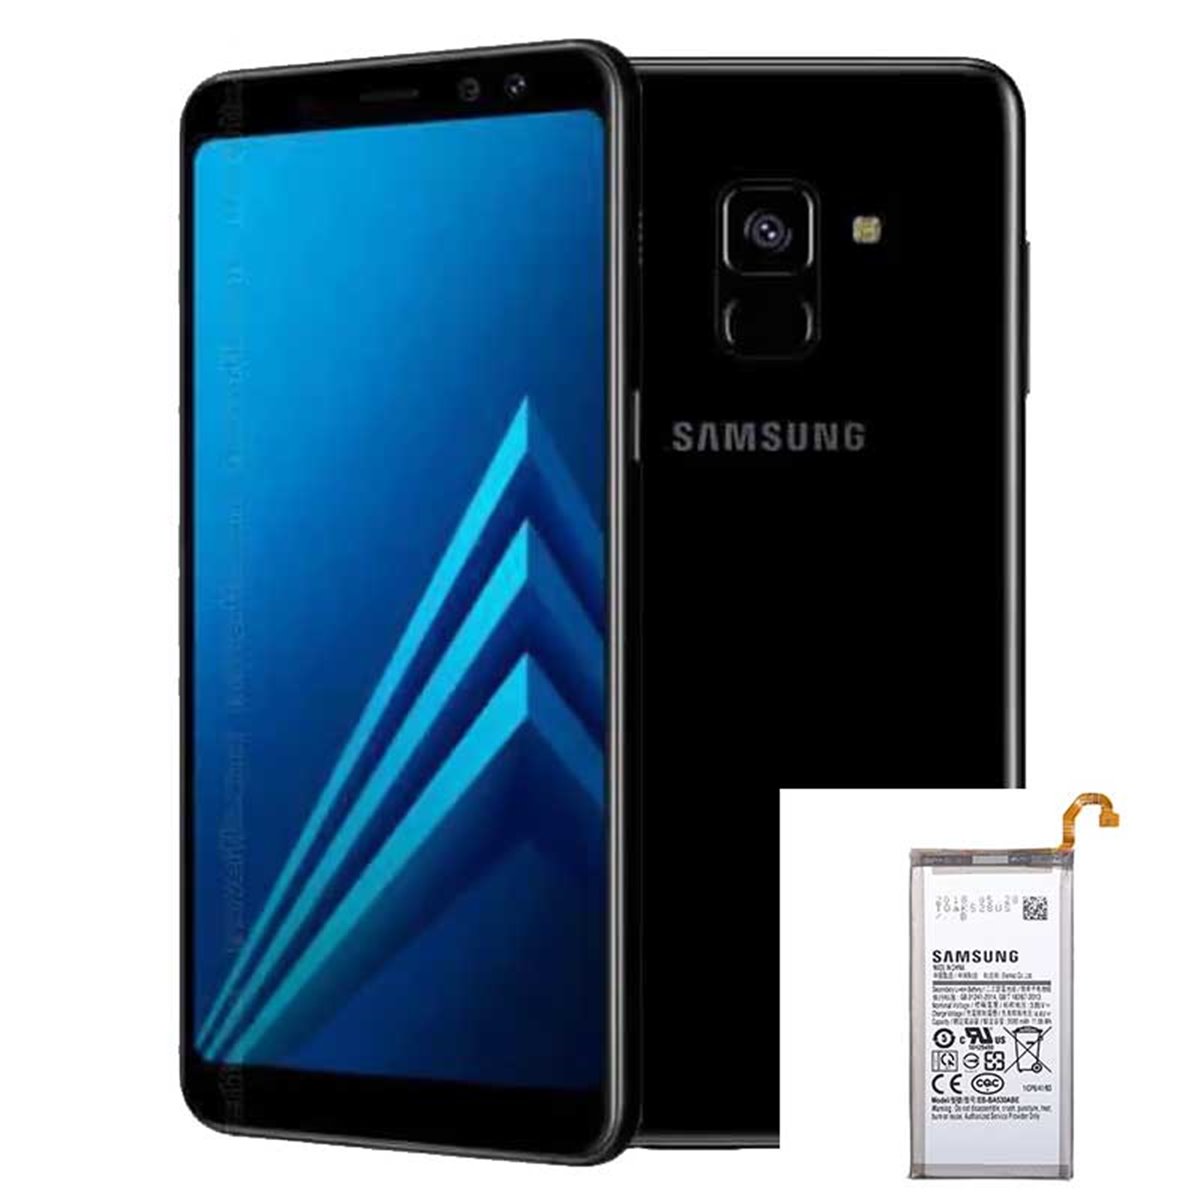 Reparacion/ cambio Bateria Samsung Galaxy A8 2018 A530